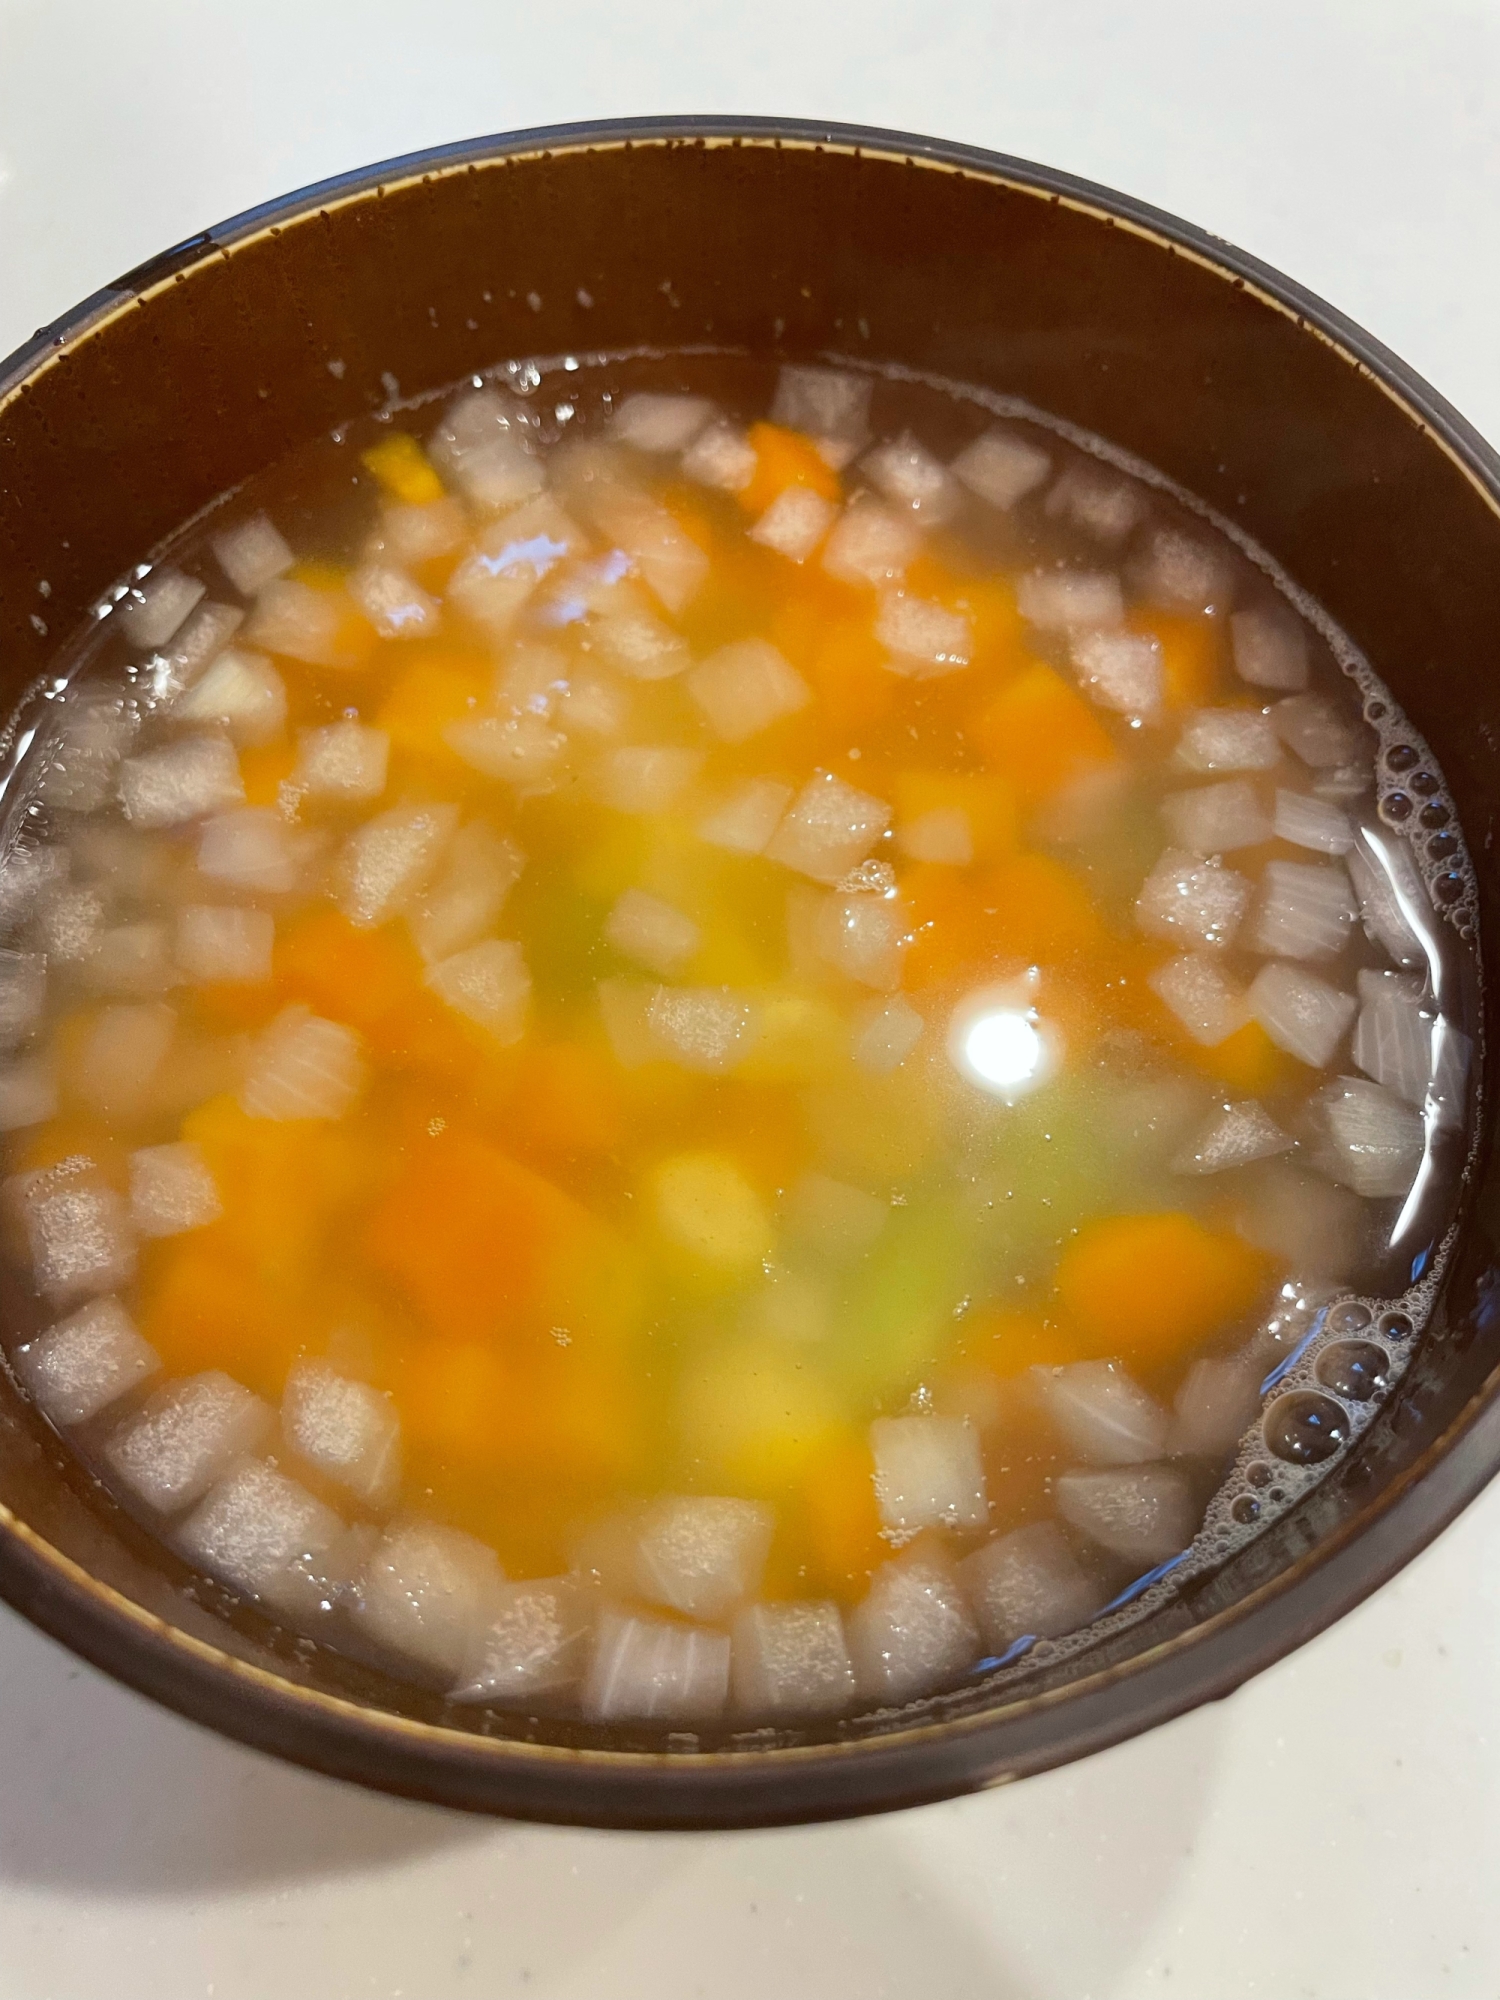 ミックスベジタブルで⭐超簡単⭐︎野菜スープ